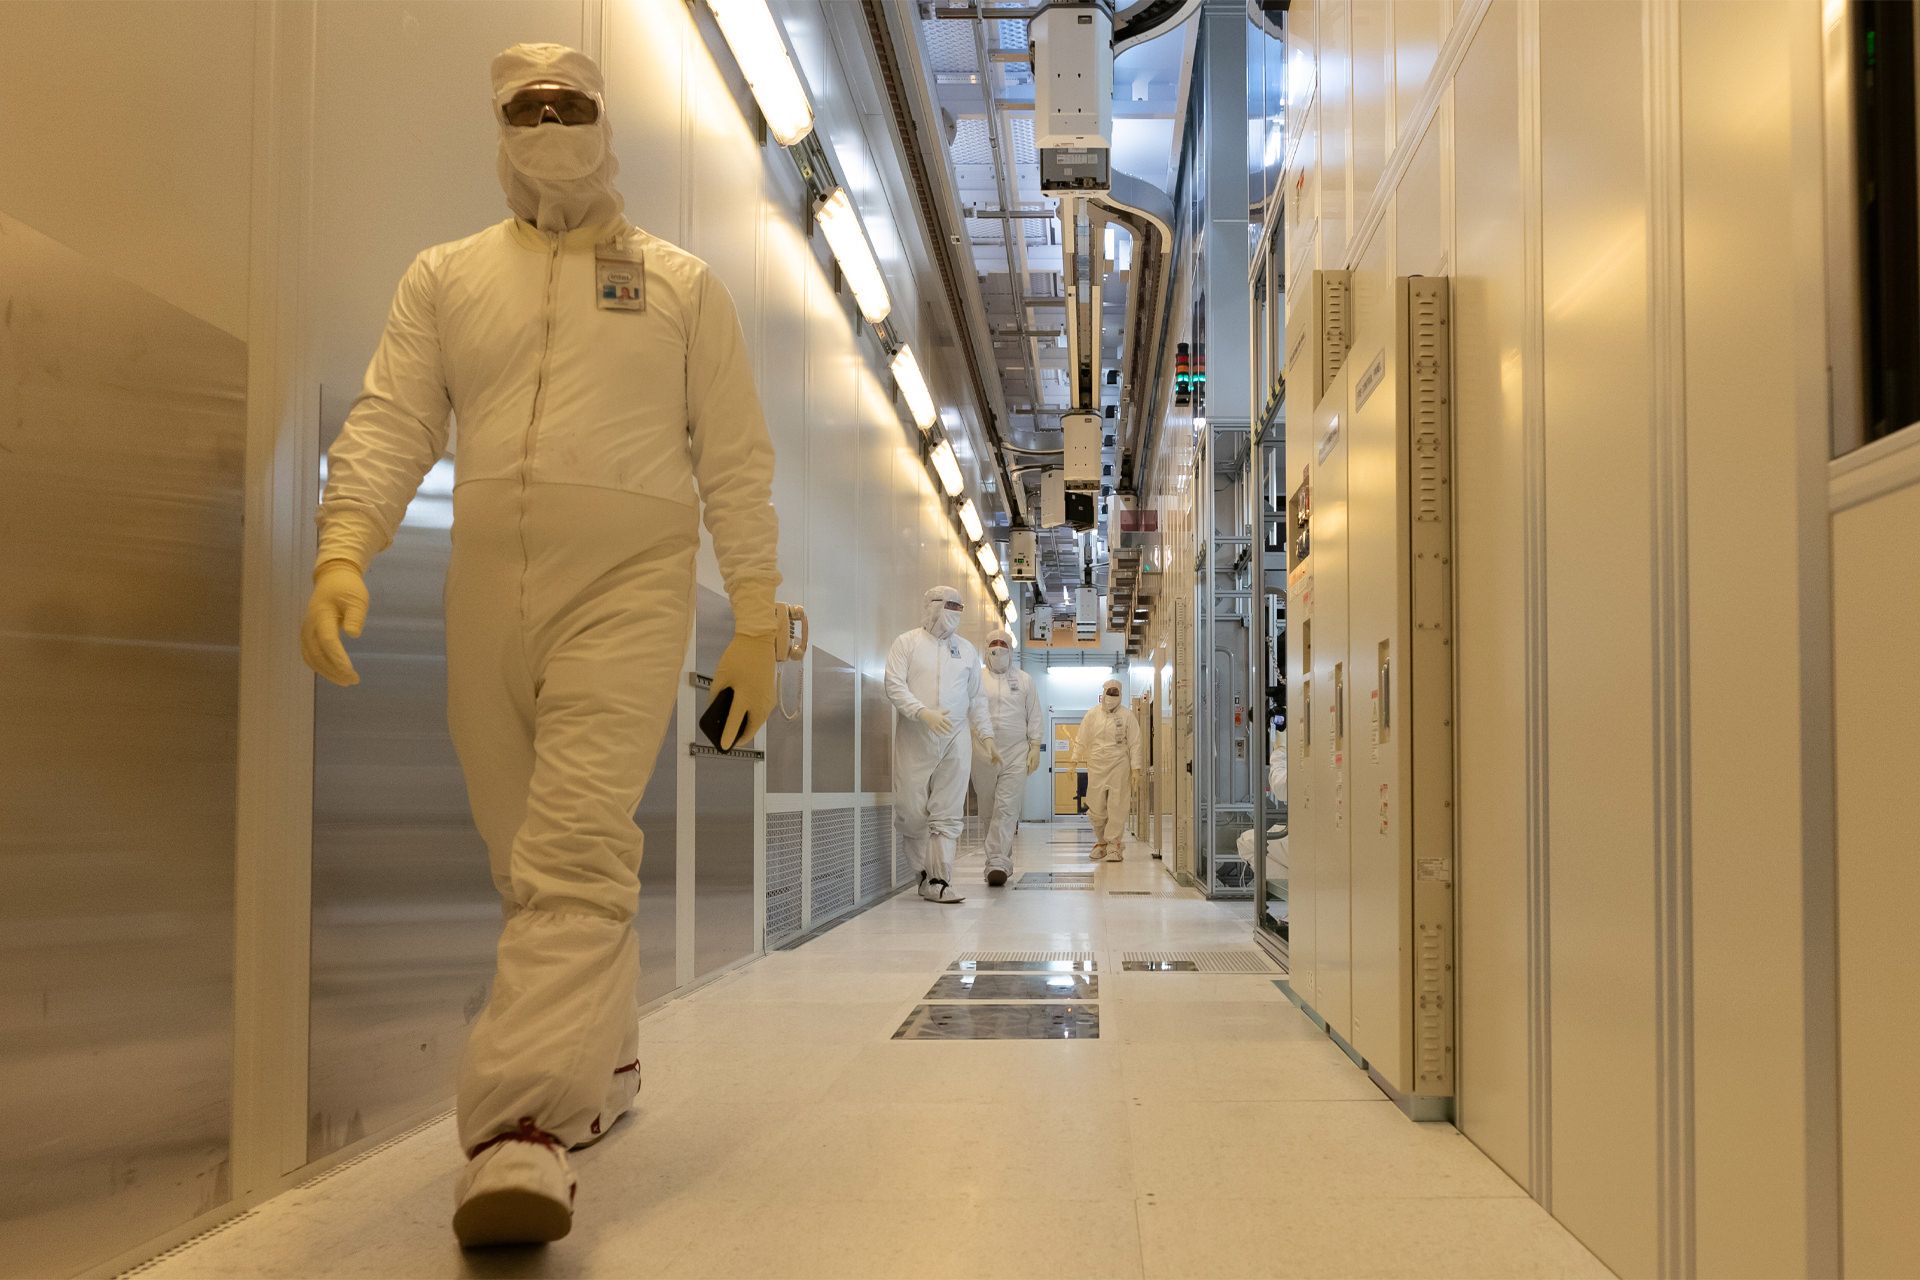 مرجع متخصصين ايران داخل كارخانه توليدي اينتل / Intel چند فرد با لباس سفيد